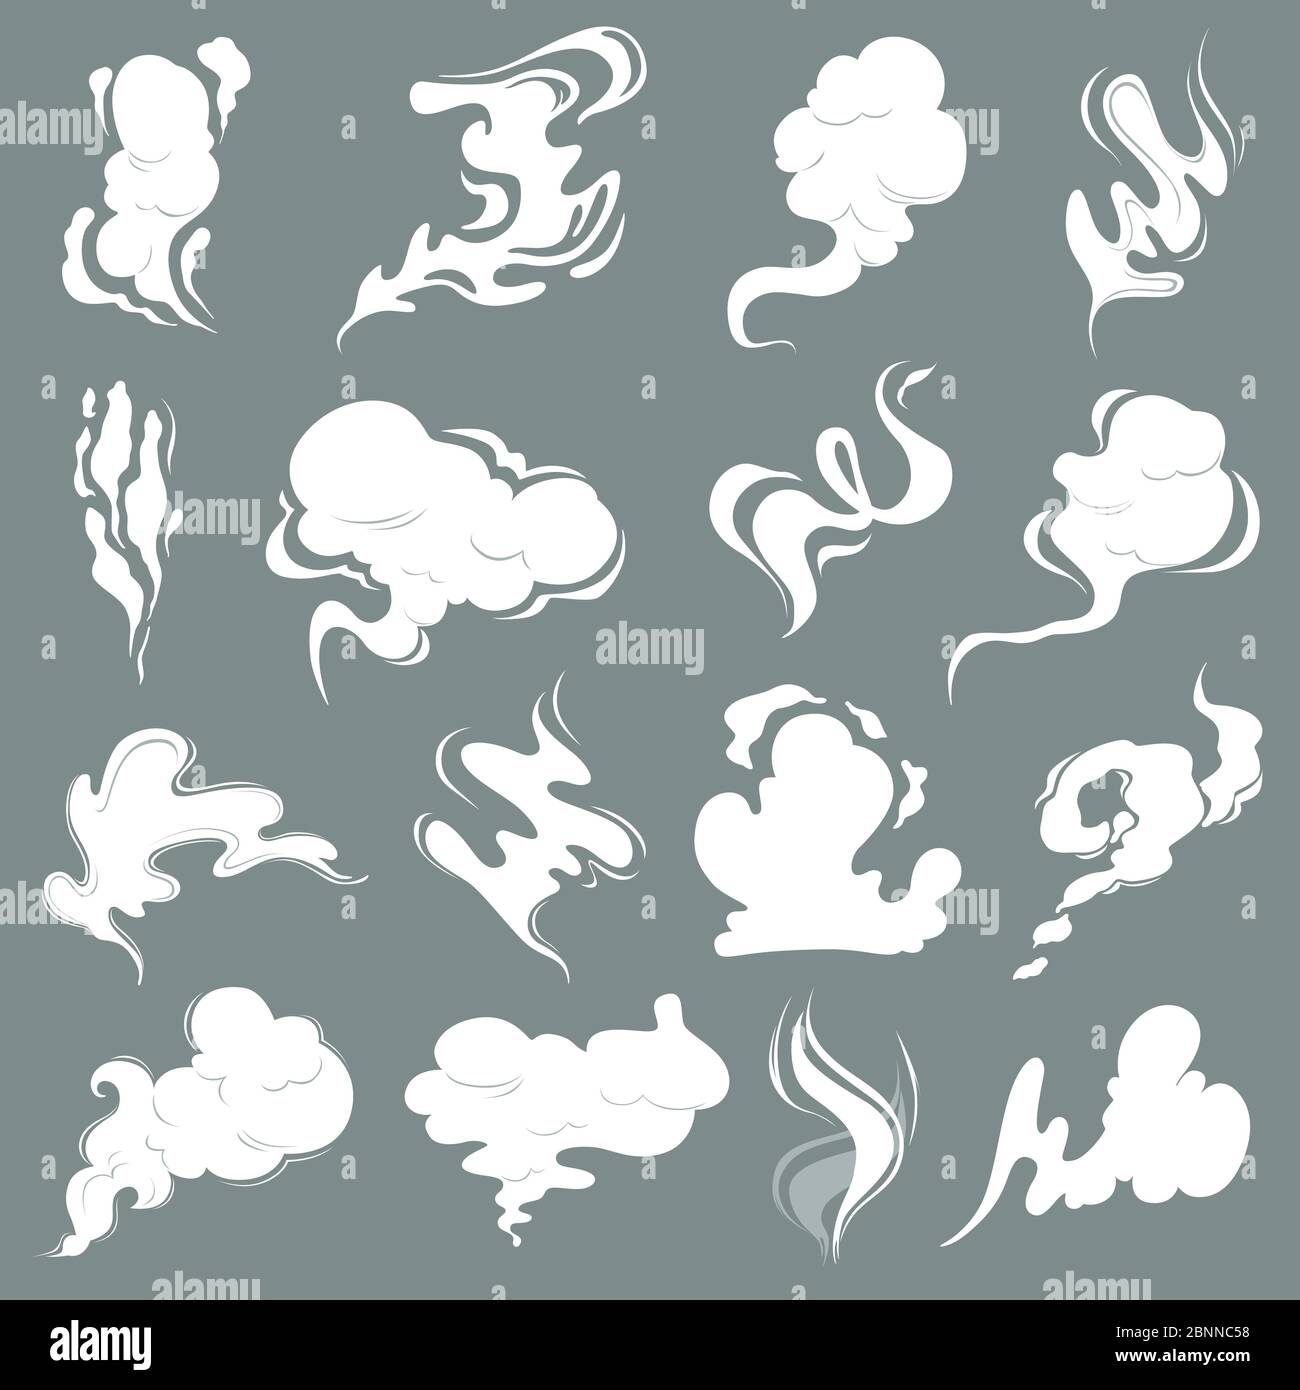 Nuvole di vapore. Fumetto polvere fumo odore vfx esplosione vapore tempesta immagini vettoriali isolato Illustrazione Vettoriale